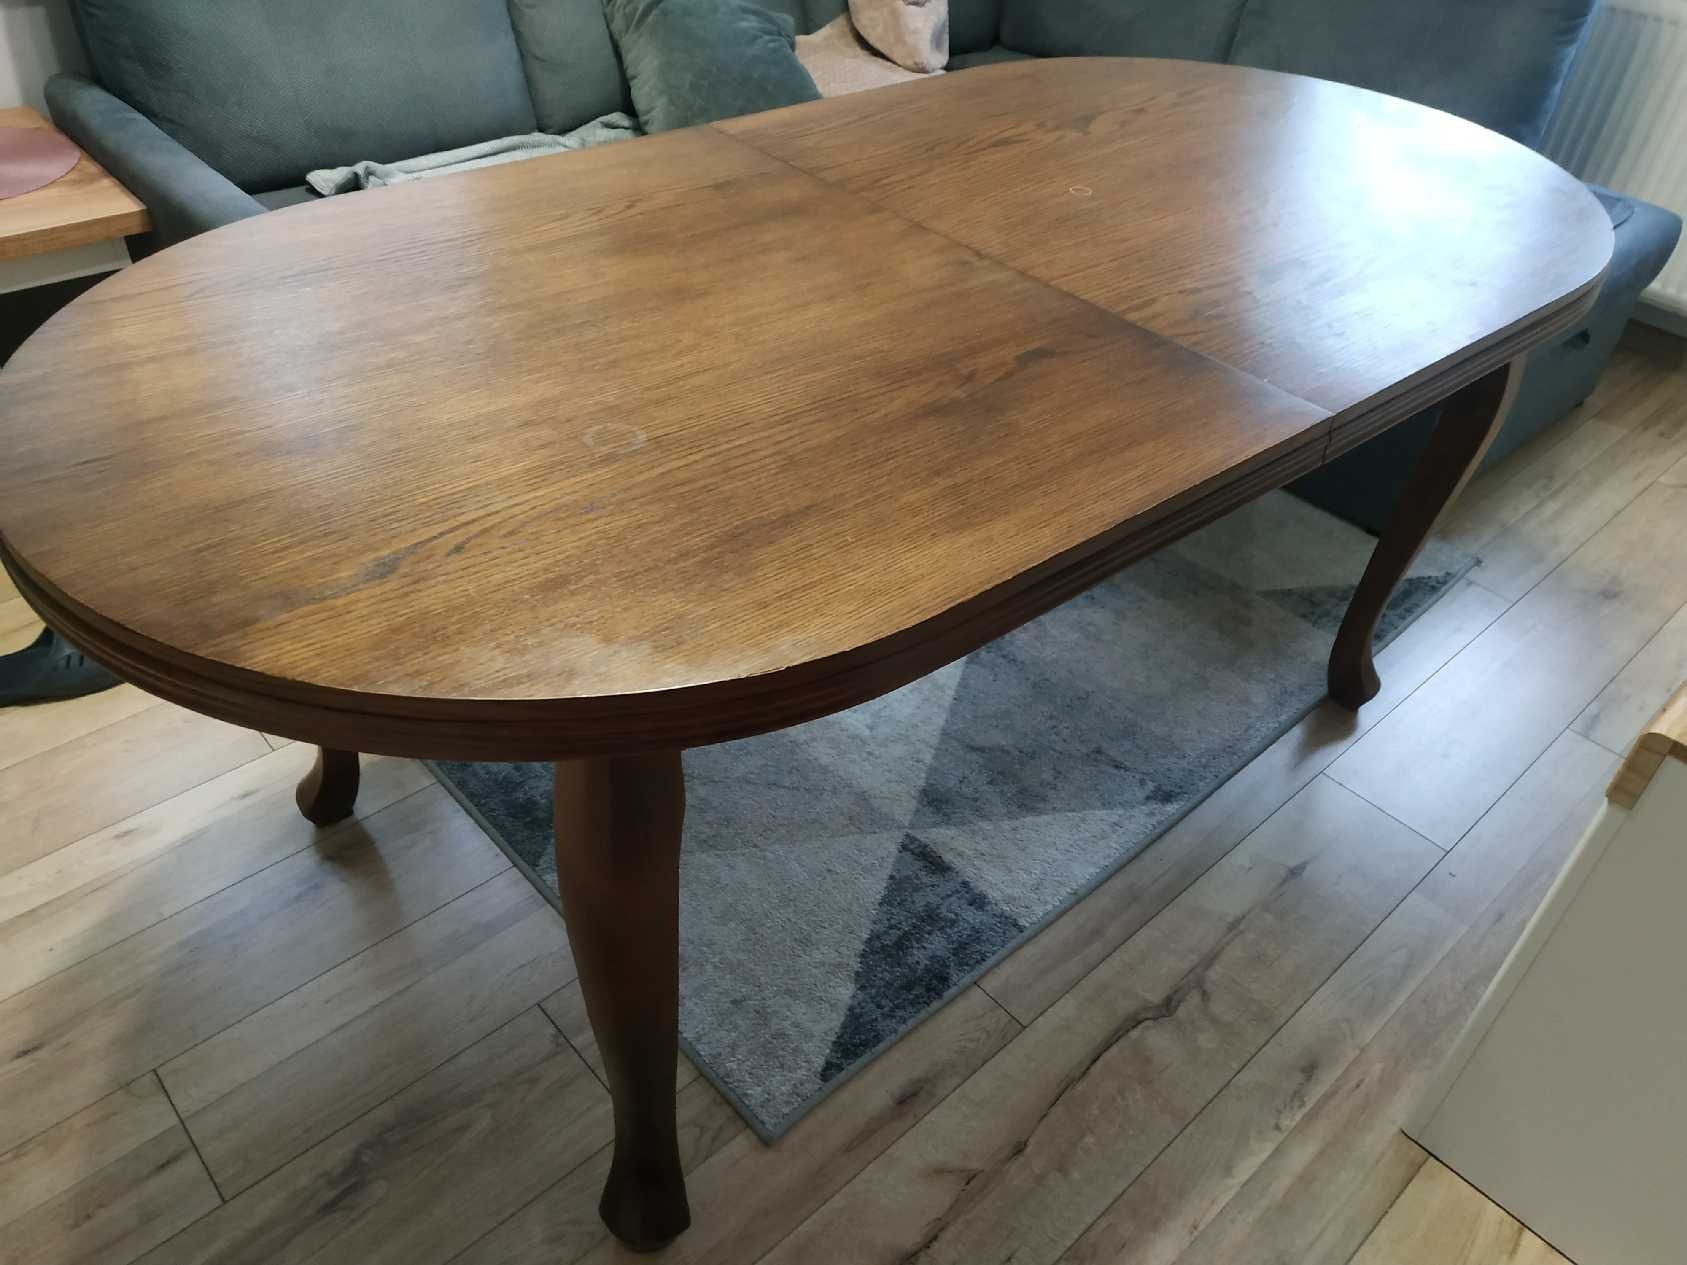 Stół drewniany bukowy